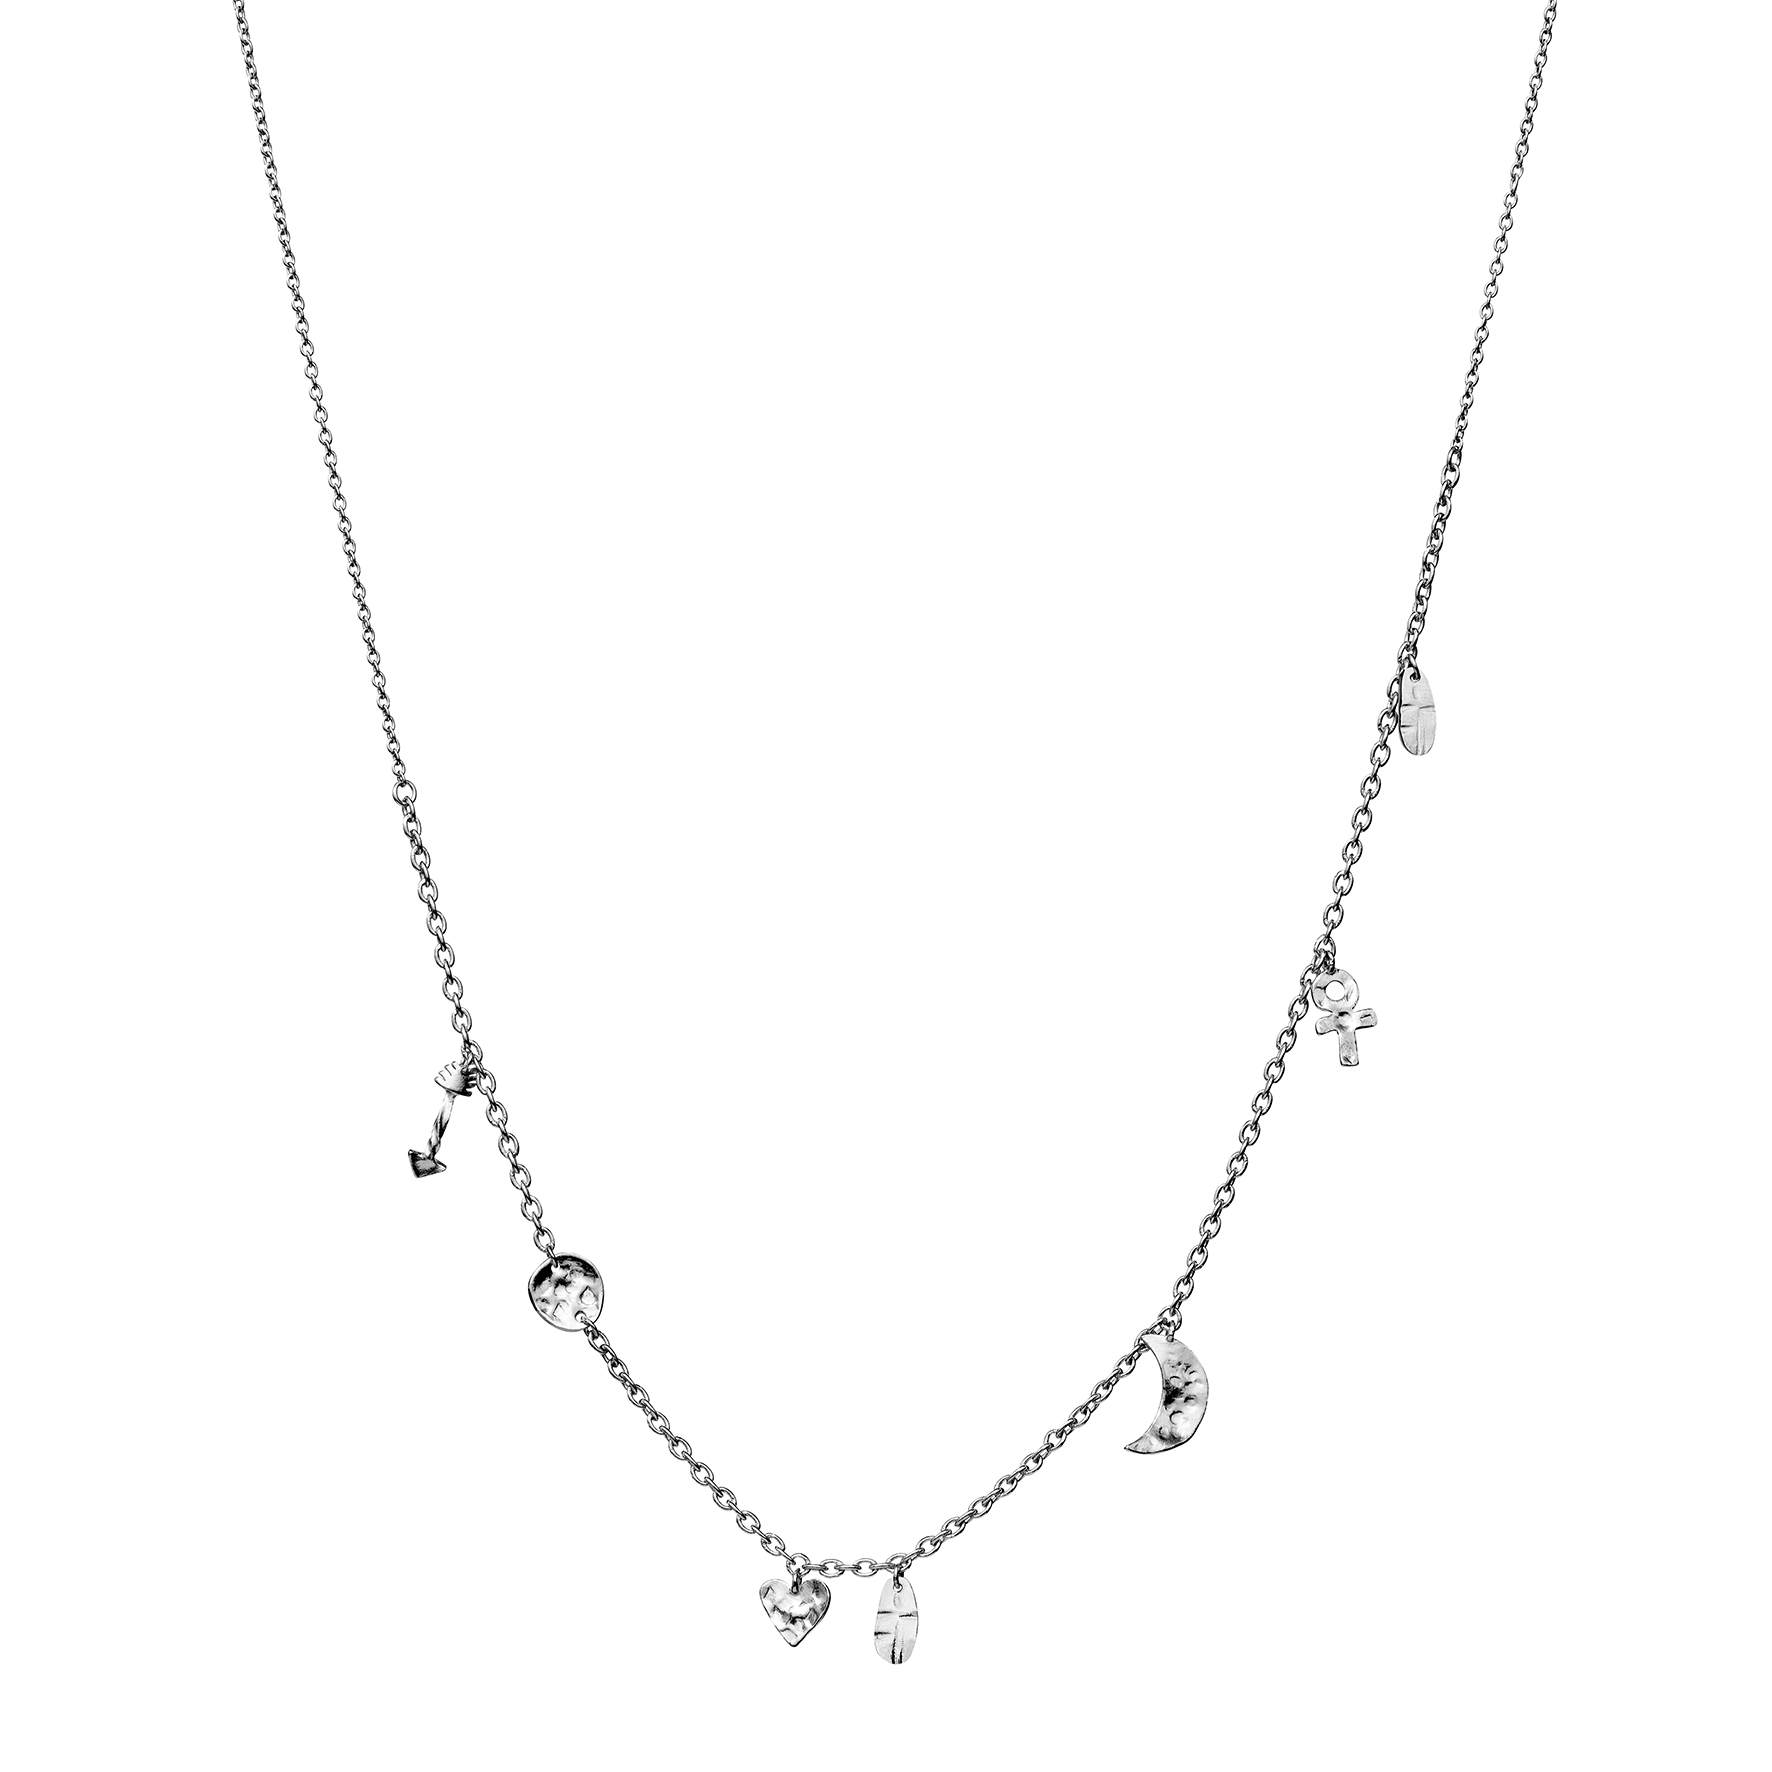 Cresida Necklace von Maanesten in Silber Sterling 925